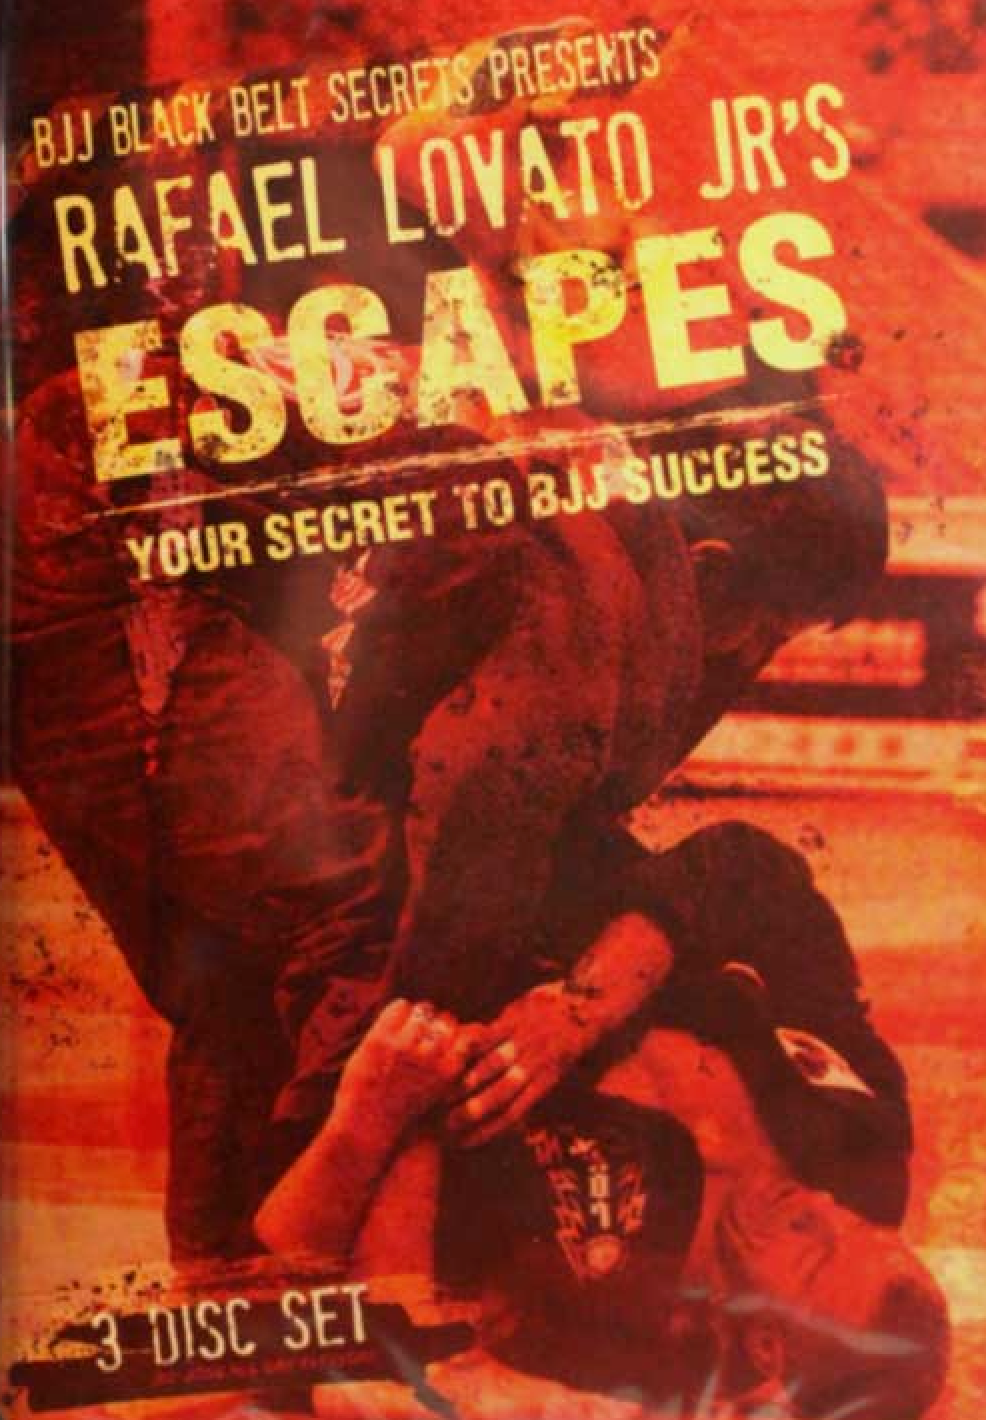 Escapes: Your Secret to BJJ Success 3 DVD Set by Rafael Lovato Jr - Budovideos Inc